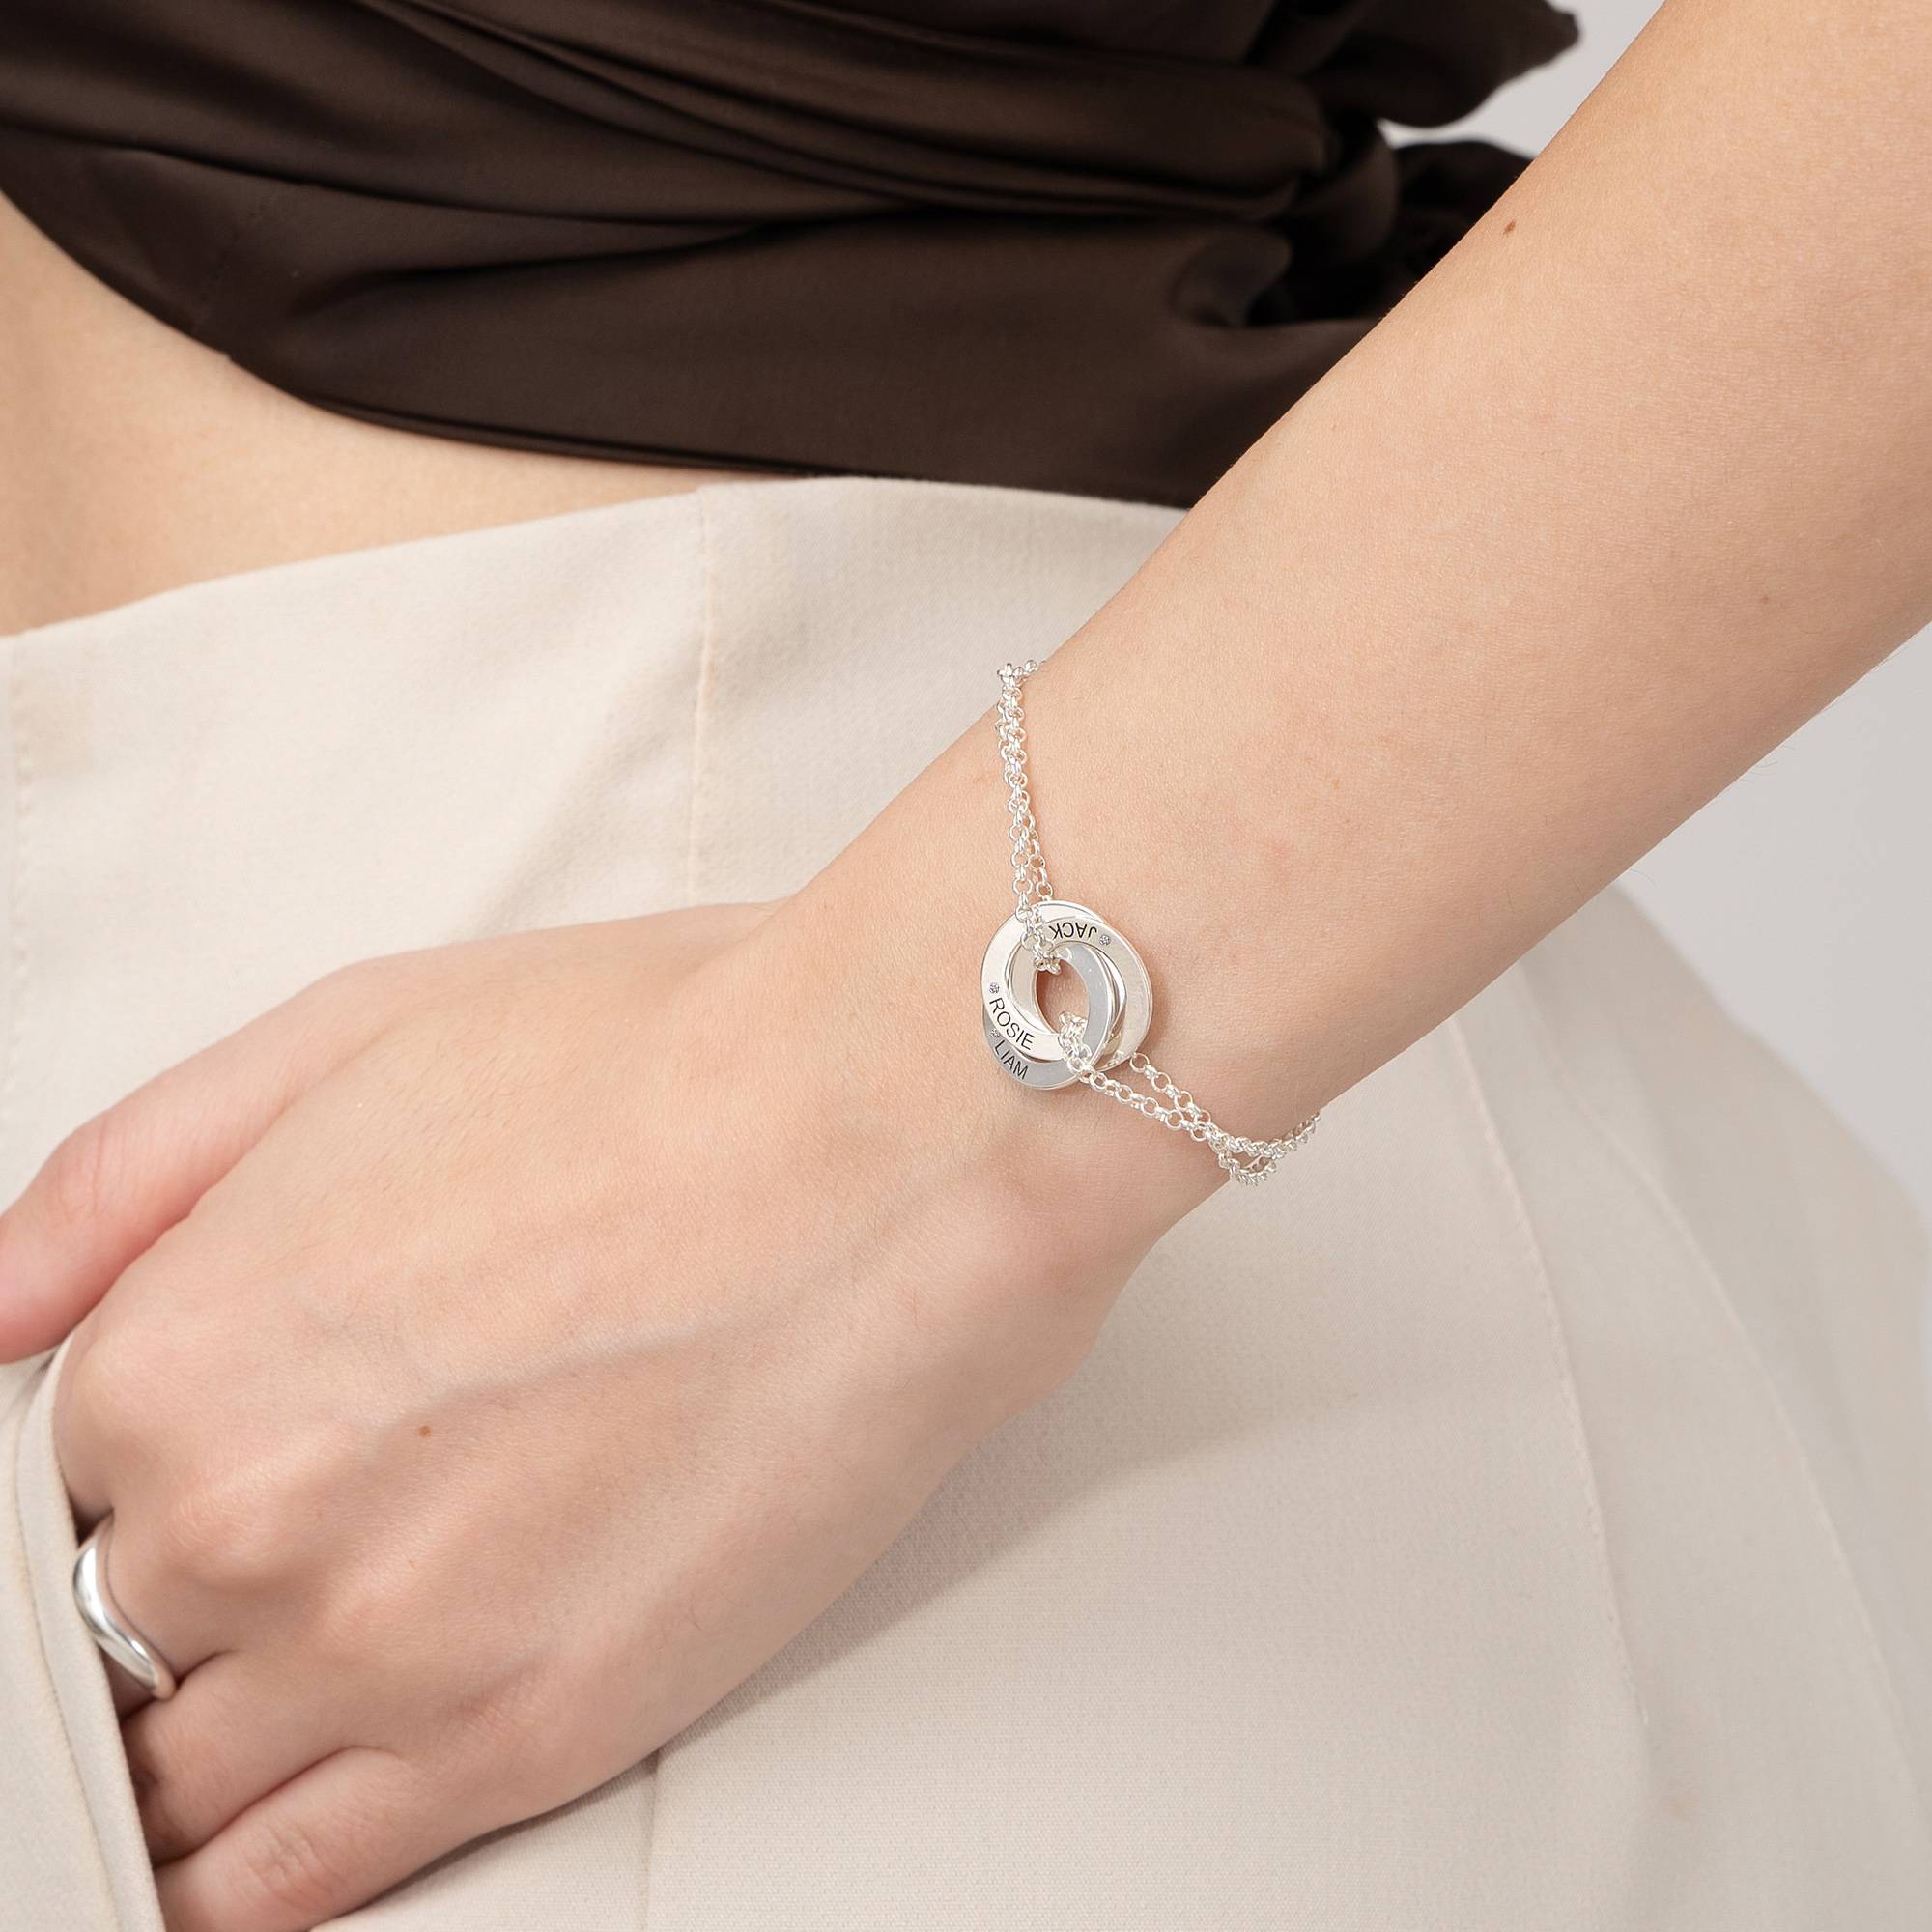 Lucy rysk ringarmband med diamant i sterlingsilver.-2 produktbilder